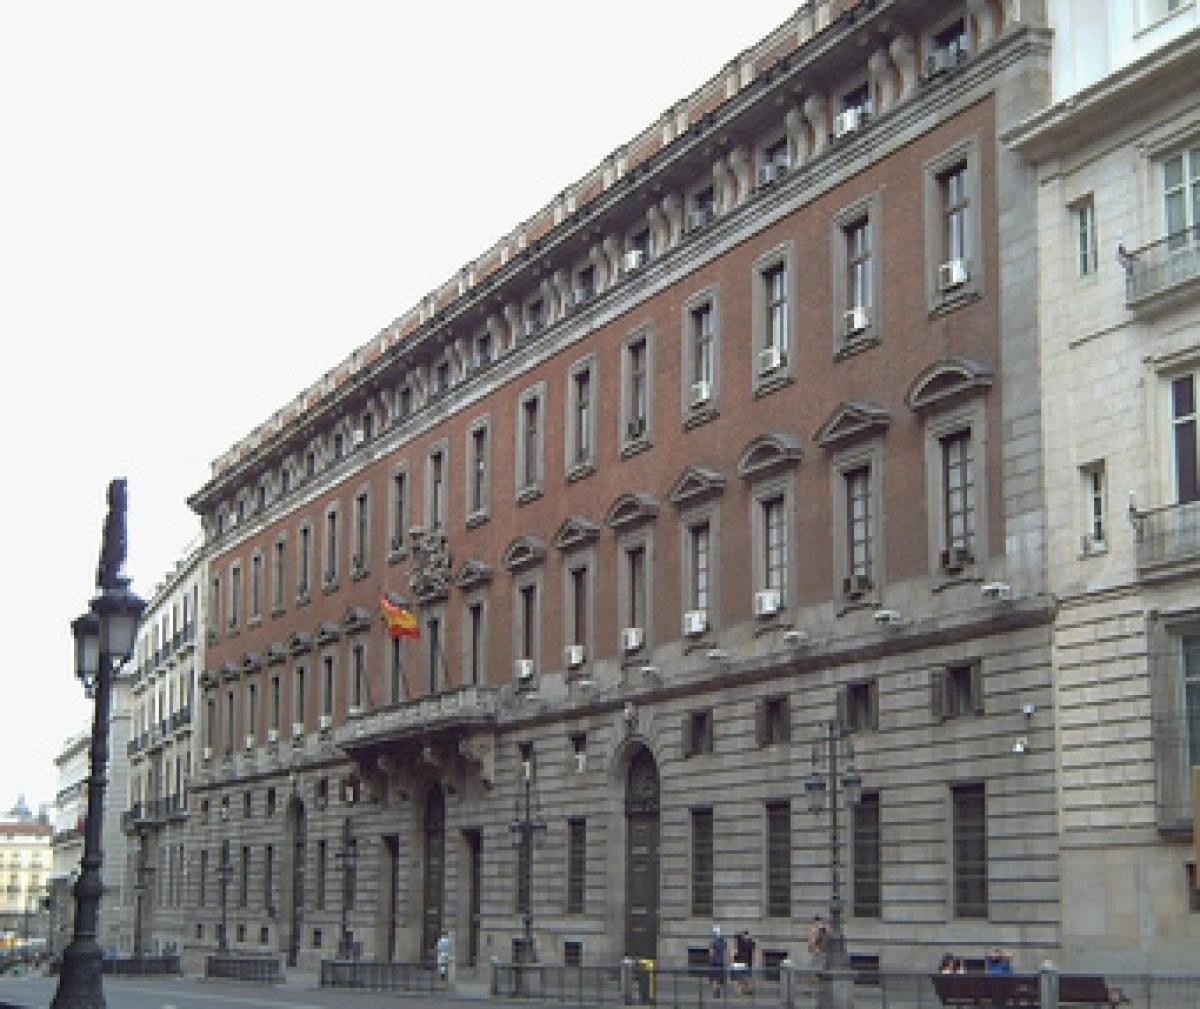 Ministerio de Hacienda y Administraciones Públicas, Real Casa de la Aduana, Madrid